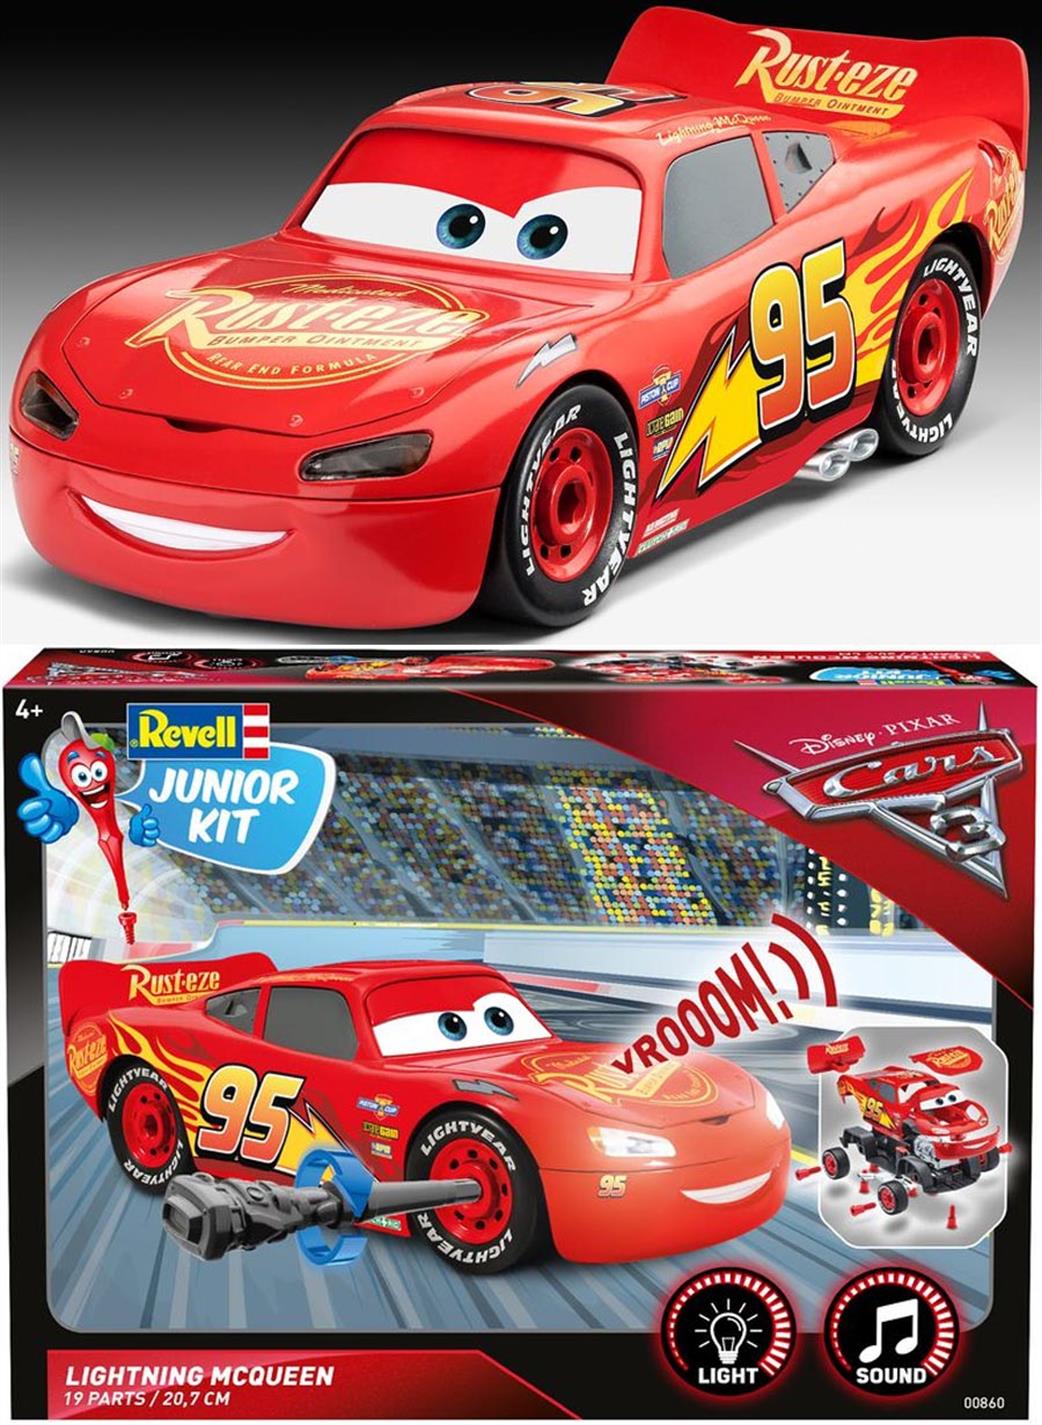 Revell 1/20 00860 Cars 3 Lightning McQueen junior kit